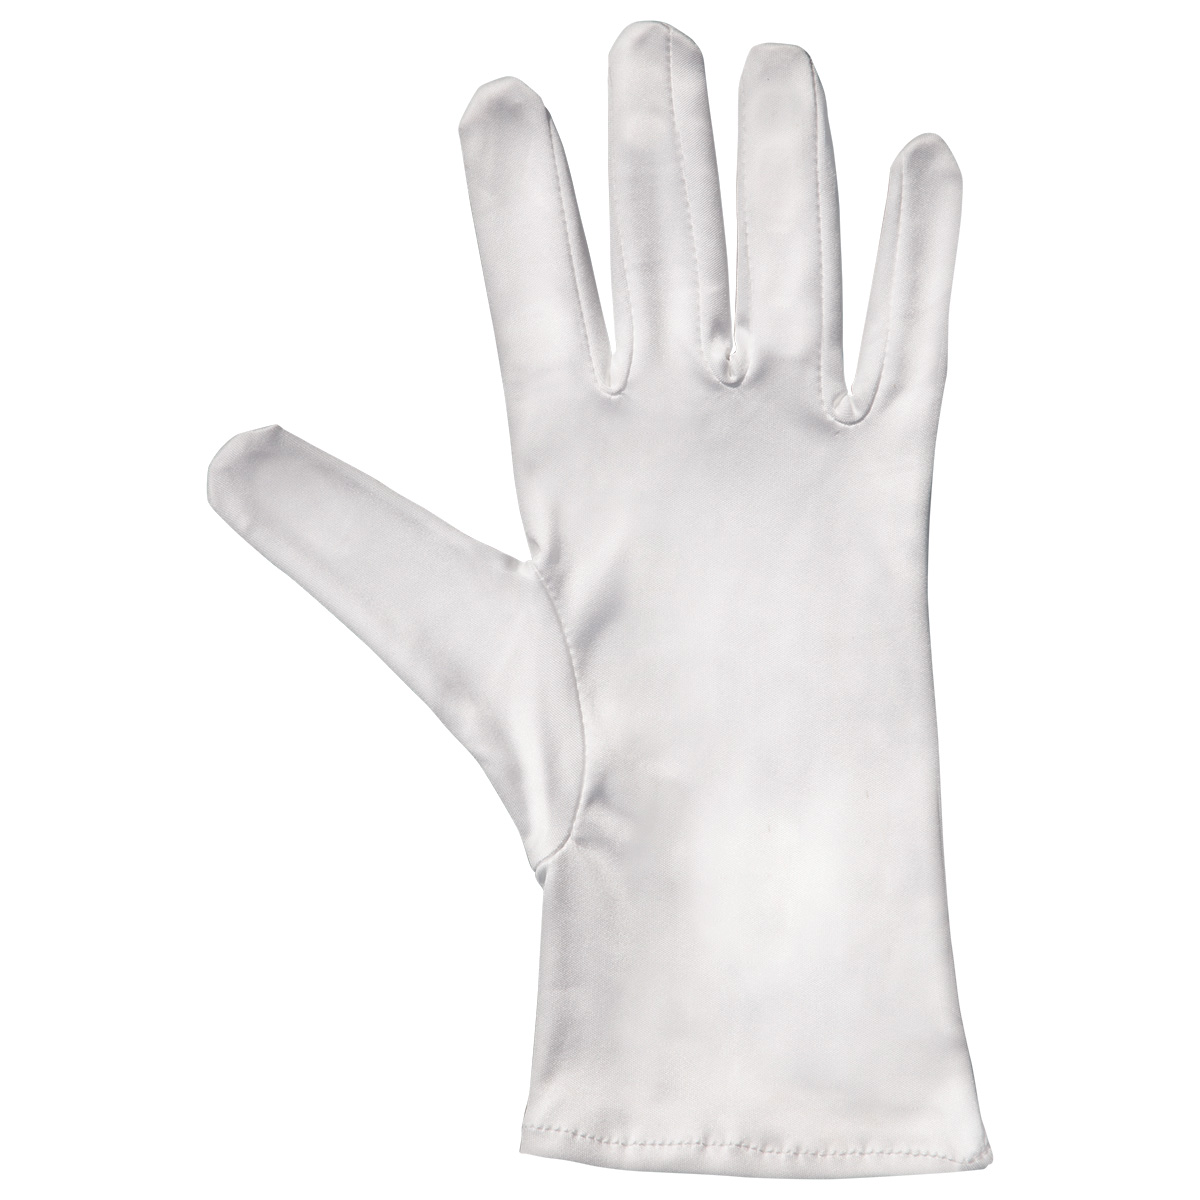 Mikrofaser Handschuh-Paar Haute Couture, weiß, Größe S
